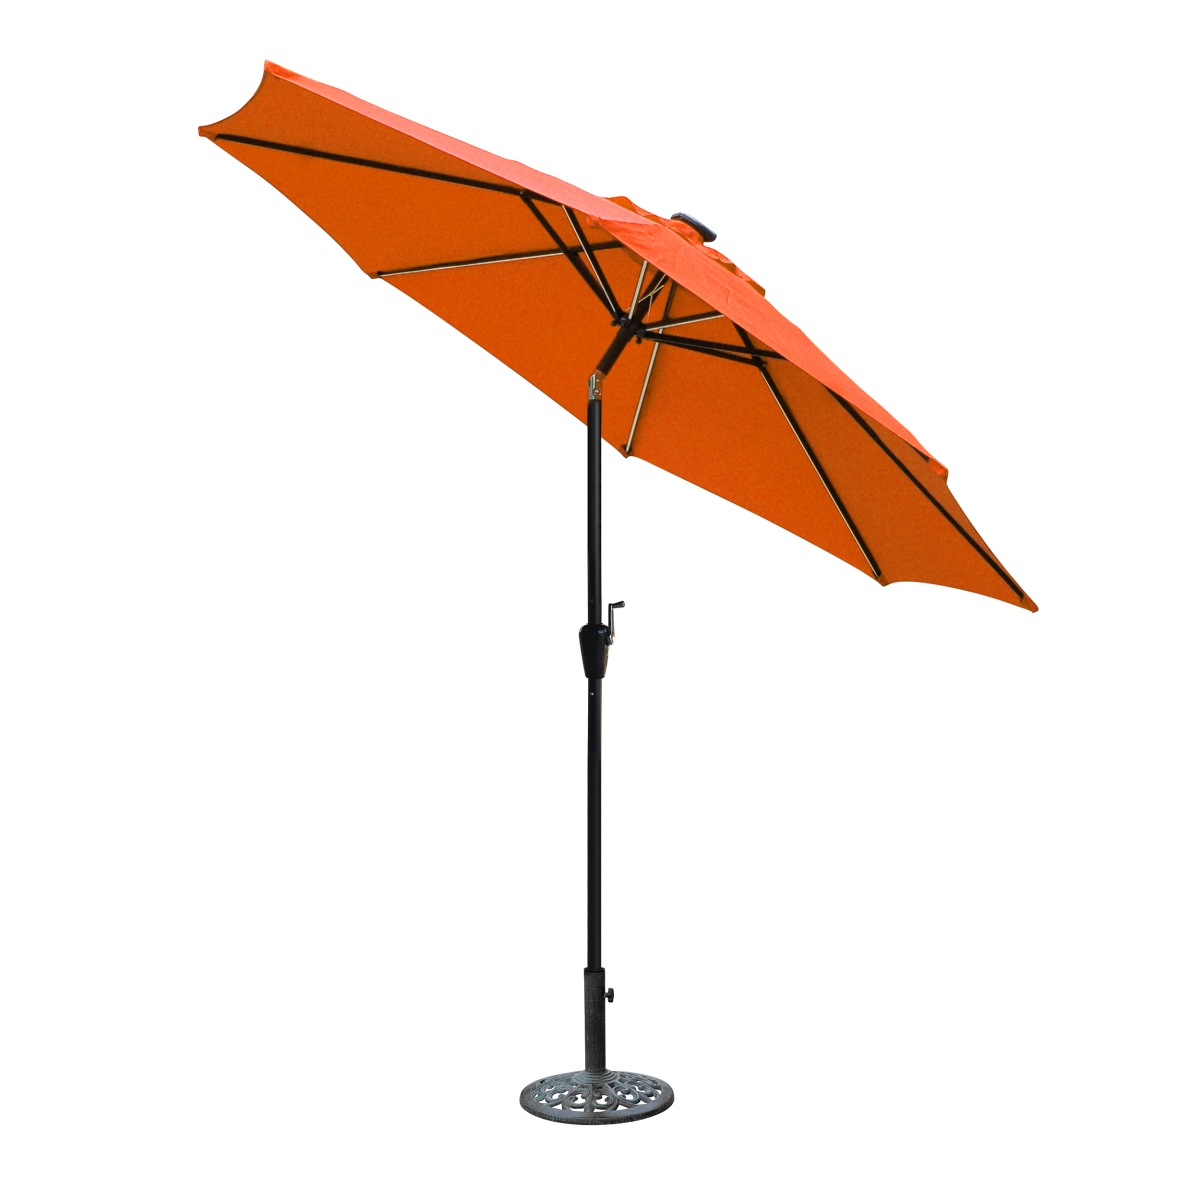 9 Ft. Aluminum Umbrella With Crank & Solar Guide Tubes - Black Pole & Orange Fabric